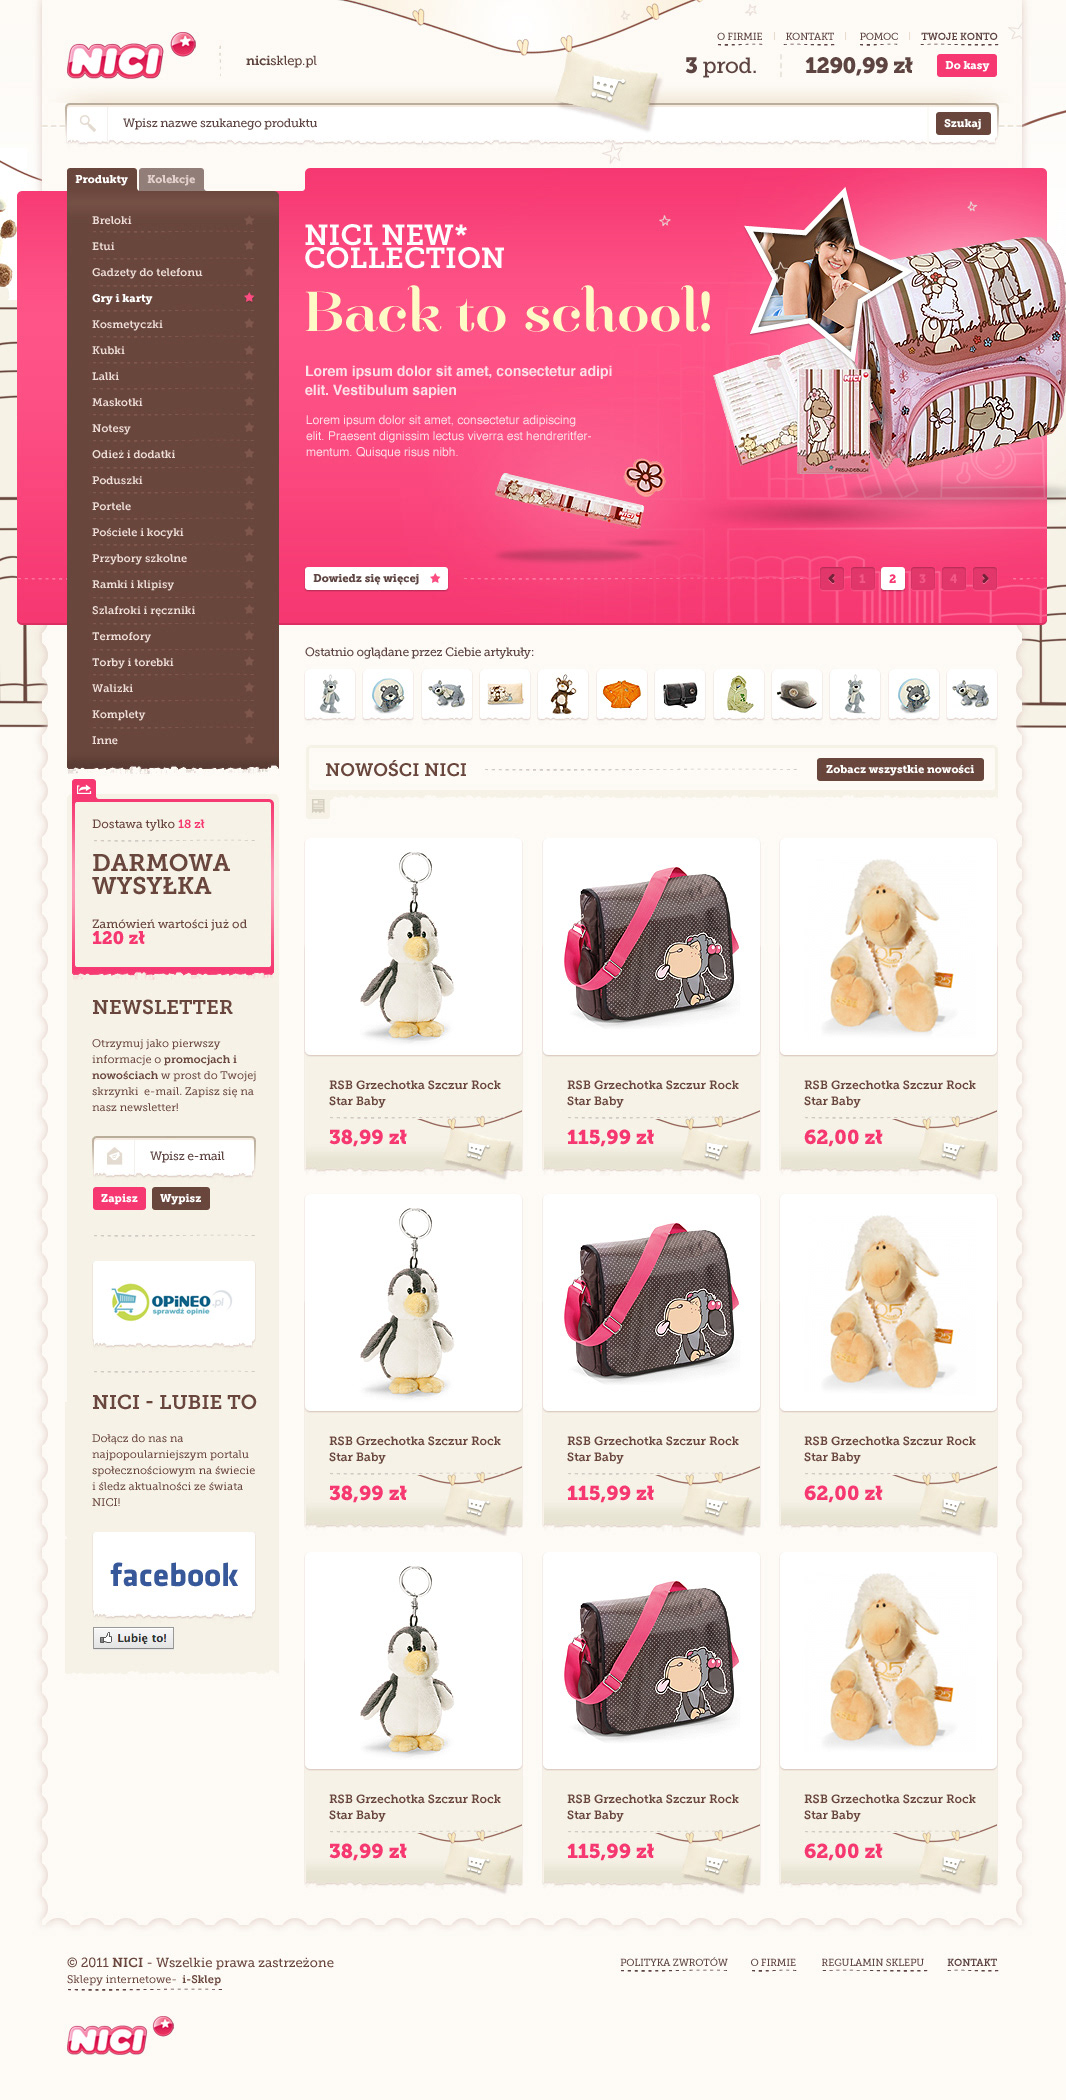 nici nicisklep dawidskinder dawid skinder skinder Layout Webdesign zabrze Ecommerce e-commerce shop on-line shop Online shop